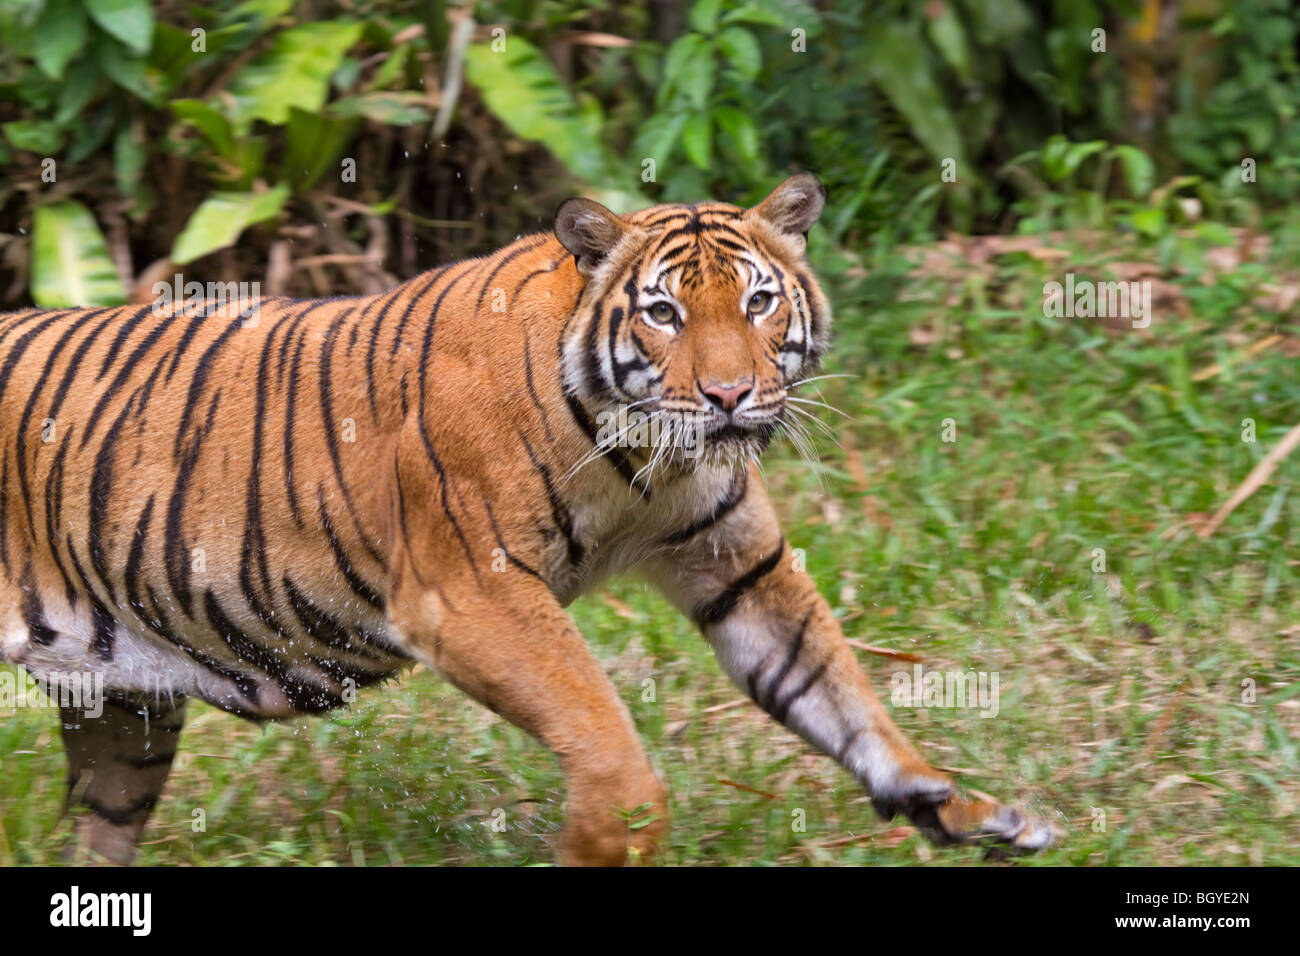 Sumatran tiger (Panthera tigris sumatrae) running in the grass after swimming. Stock Photo